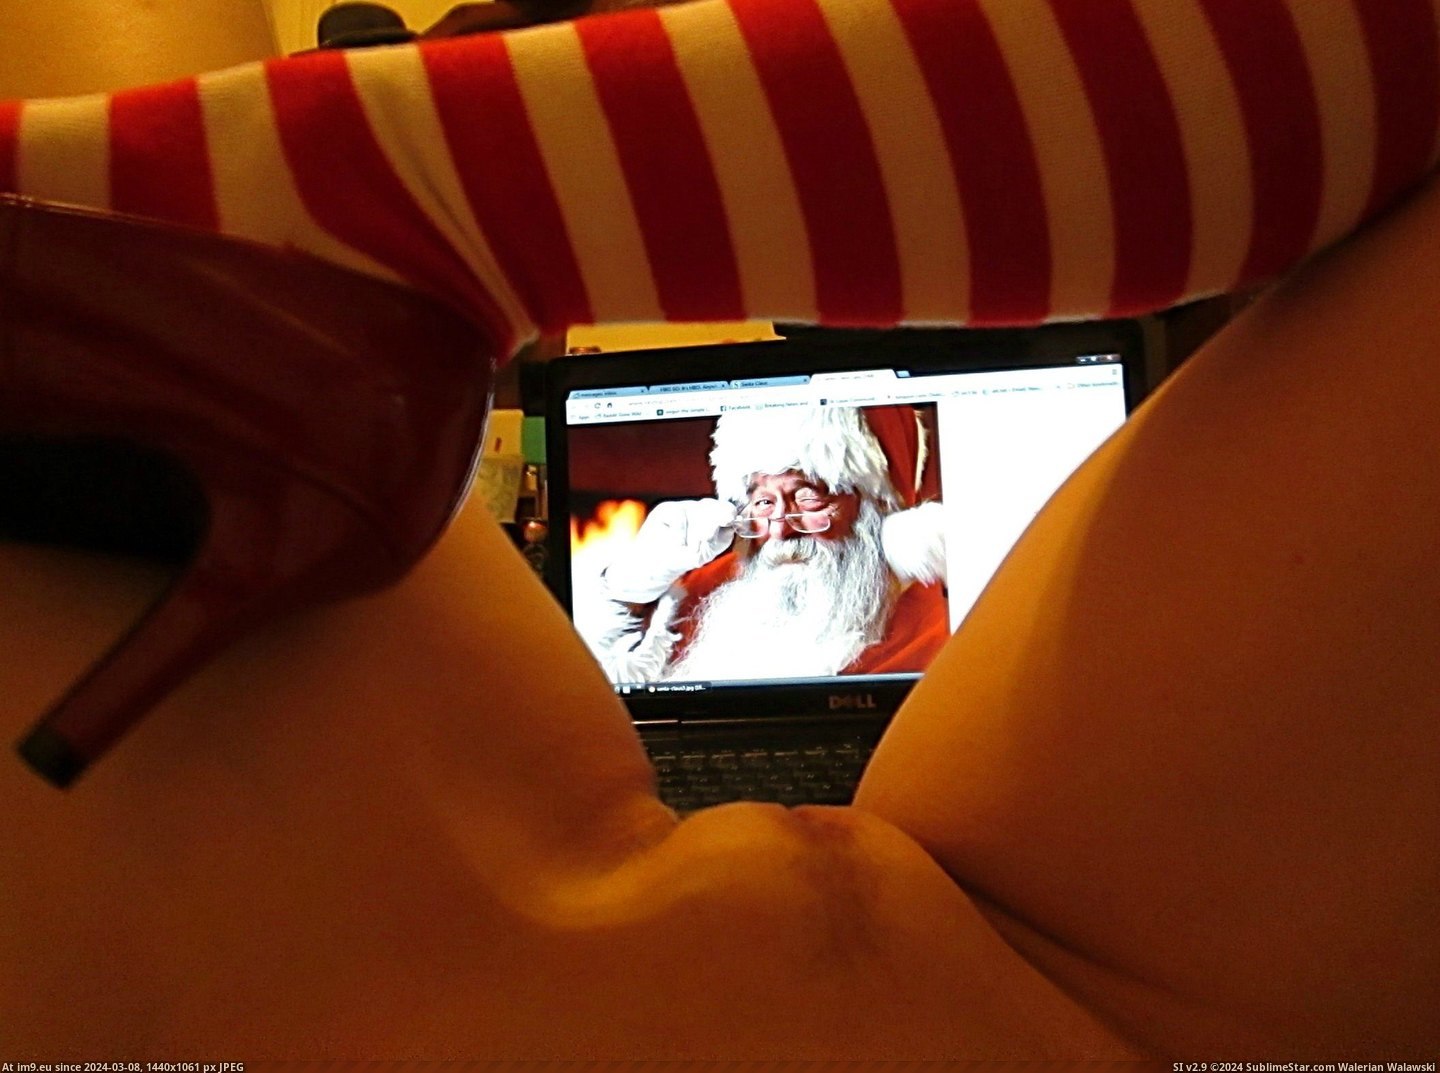 #Saw #Santa #Clause #Mommy #Lashing [Gonewild] I Saw Mommy {F}lashing Santa Clause Pic. (Bild von album My r/GONEWILD favs))